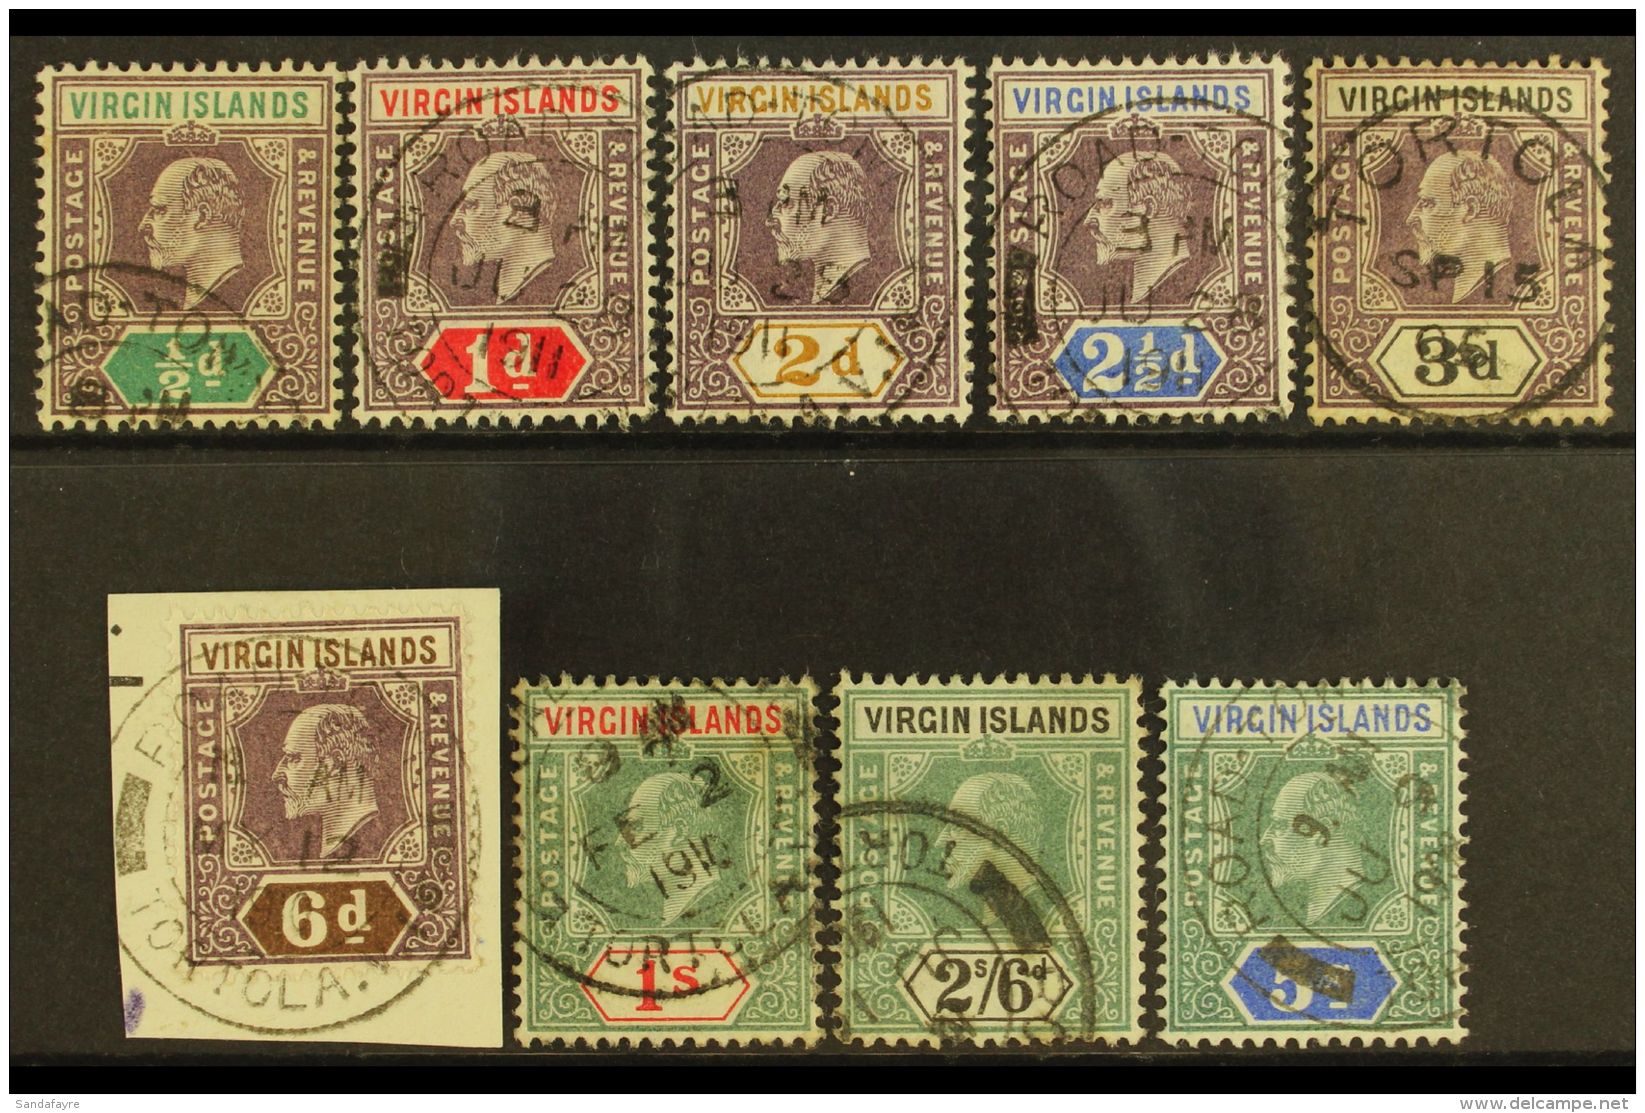 1904 KEVII Definitives Complete Set, SG 54/62, Fine Cds Used. (9 Stamps) For More Images, Please Visit... - British Virgin Islands